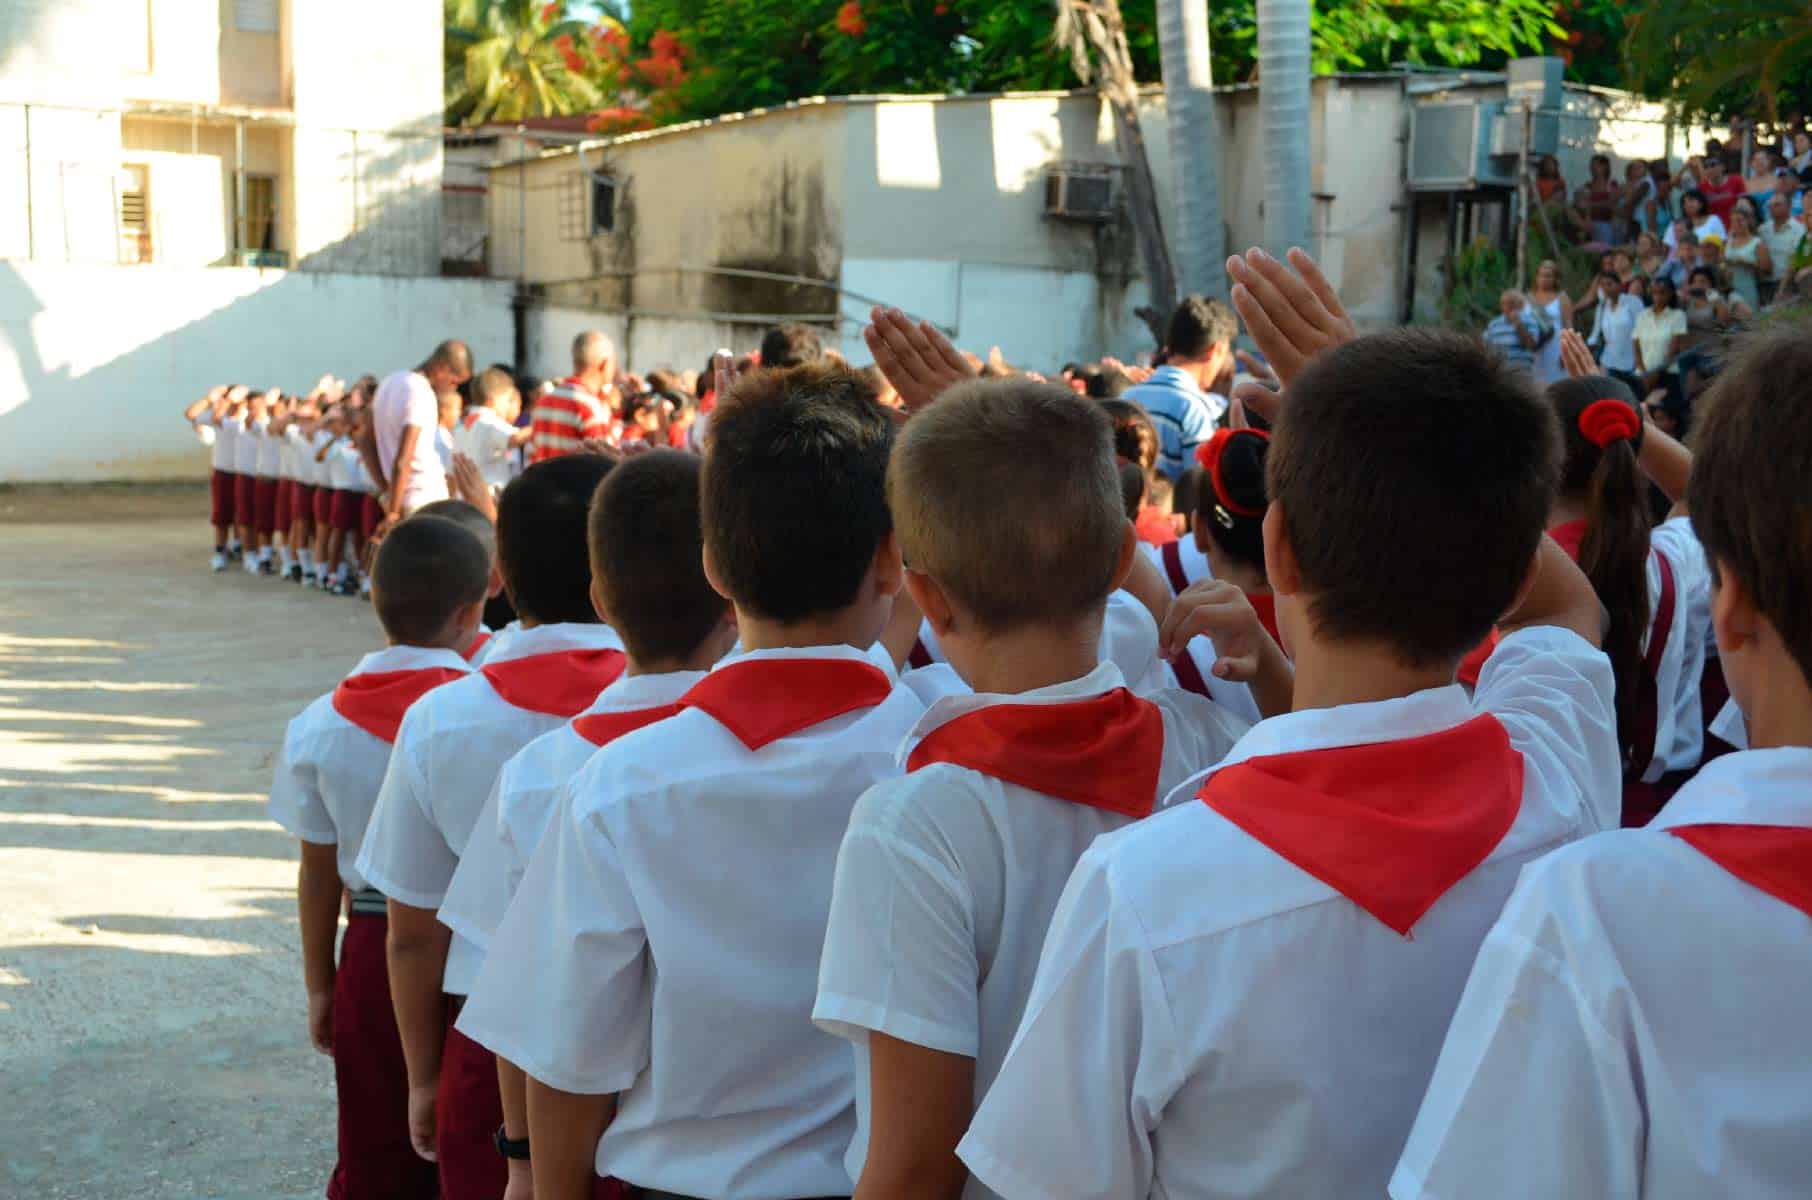 precios del uniforme escolar en Cuba